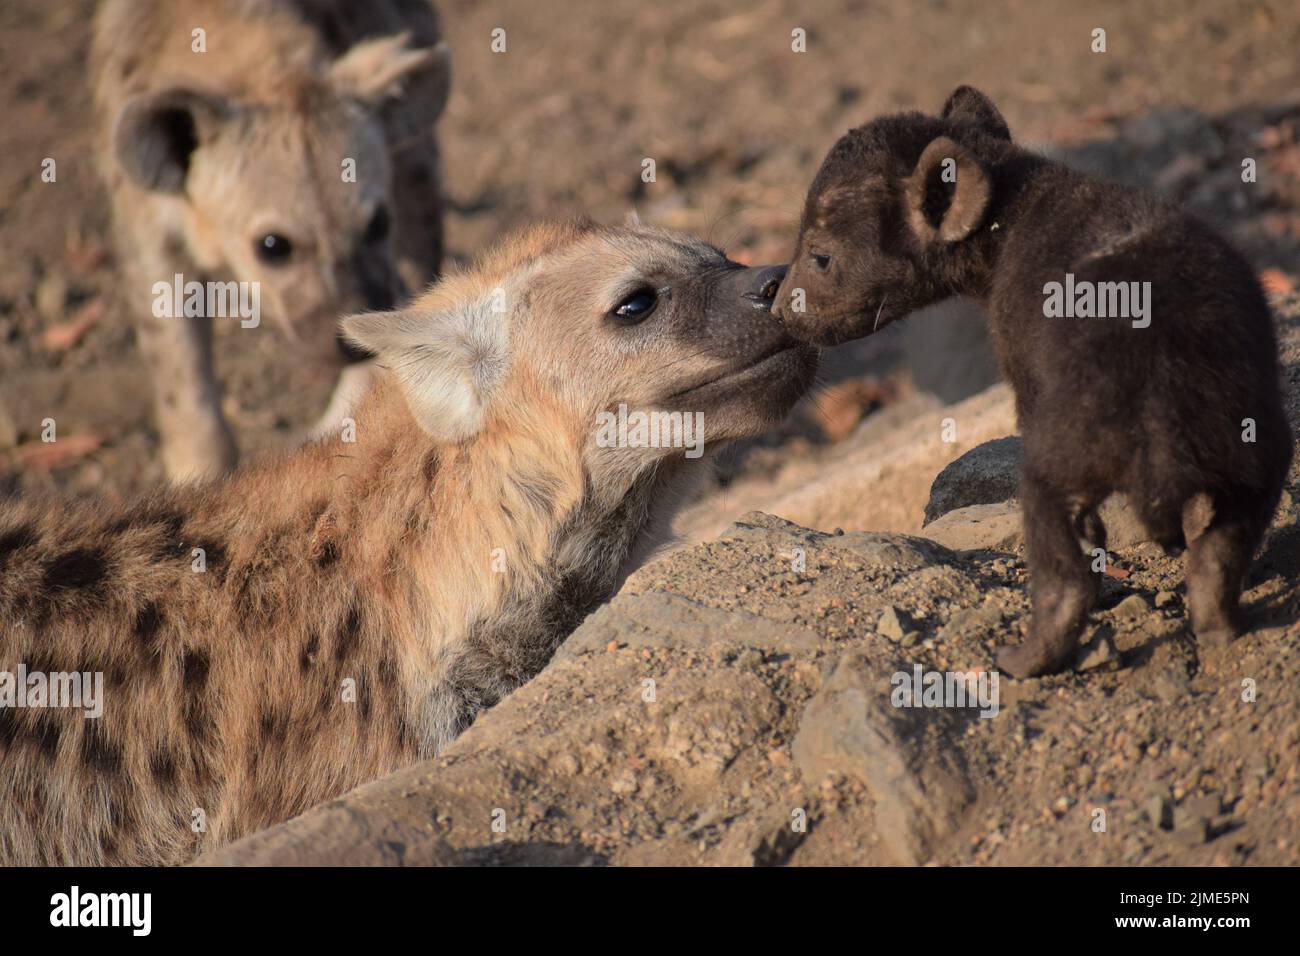 Jeune hyène à pois se présentant à un frère plus jeune qui a l'air très différent avec un manteau brun foncé. Un autre frère regarde curieusement. Banque D'Images